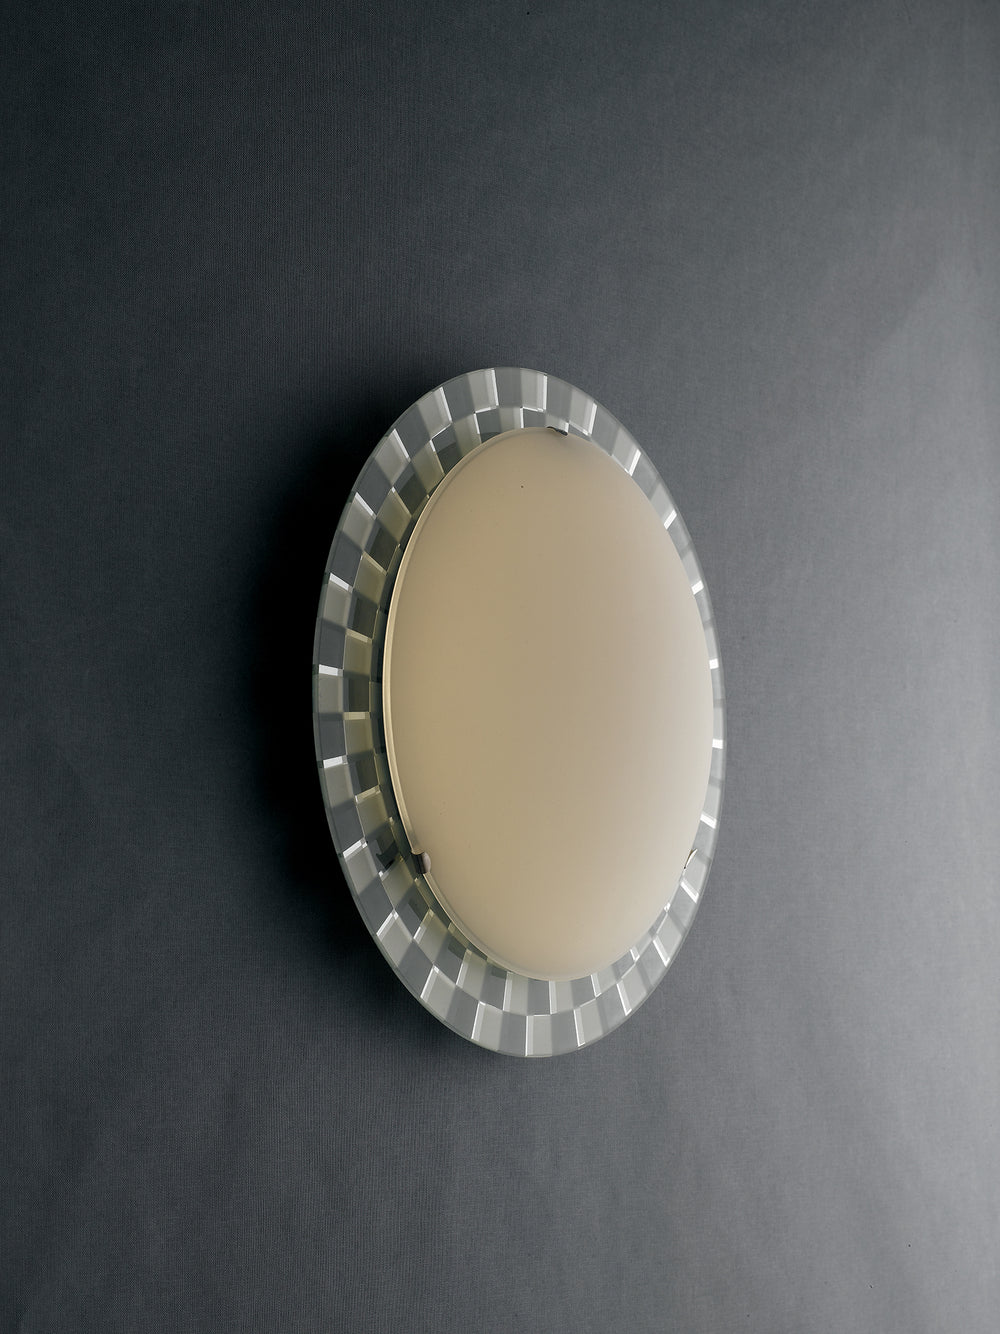 Plafoniera LED Glamour in vetro bianco con vernici a specchio con decoro a scacchi